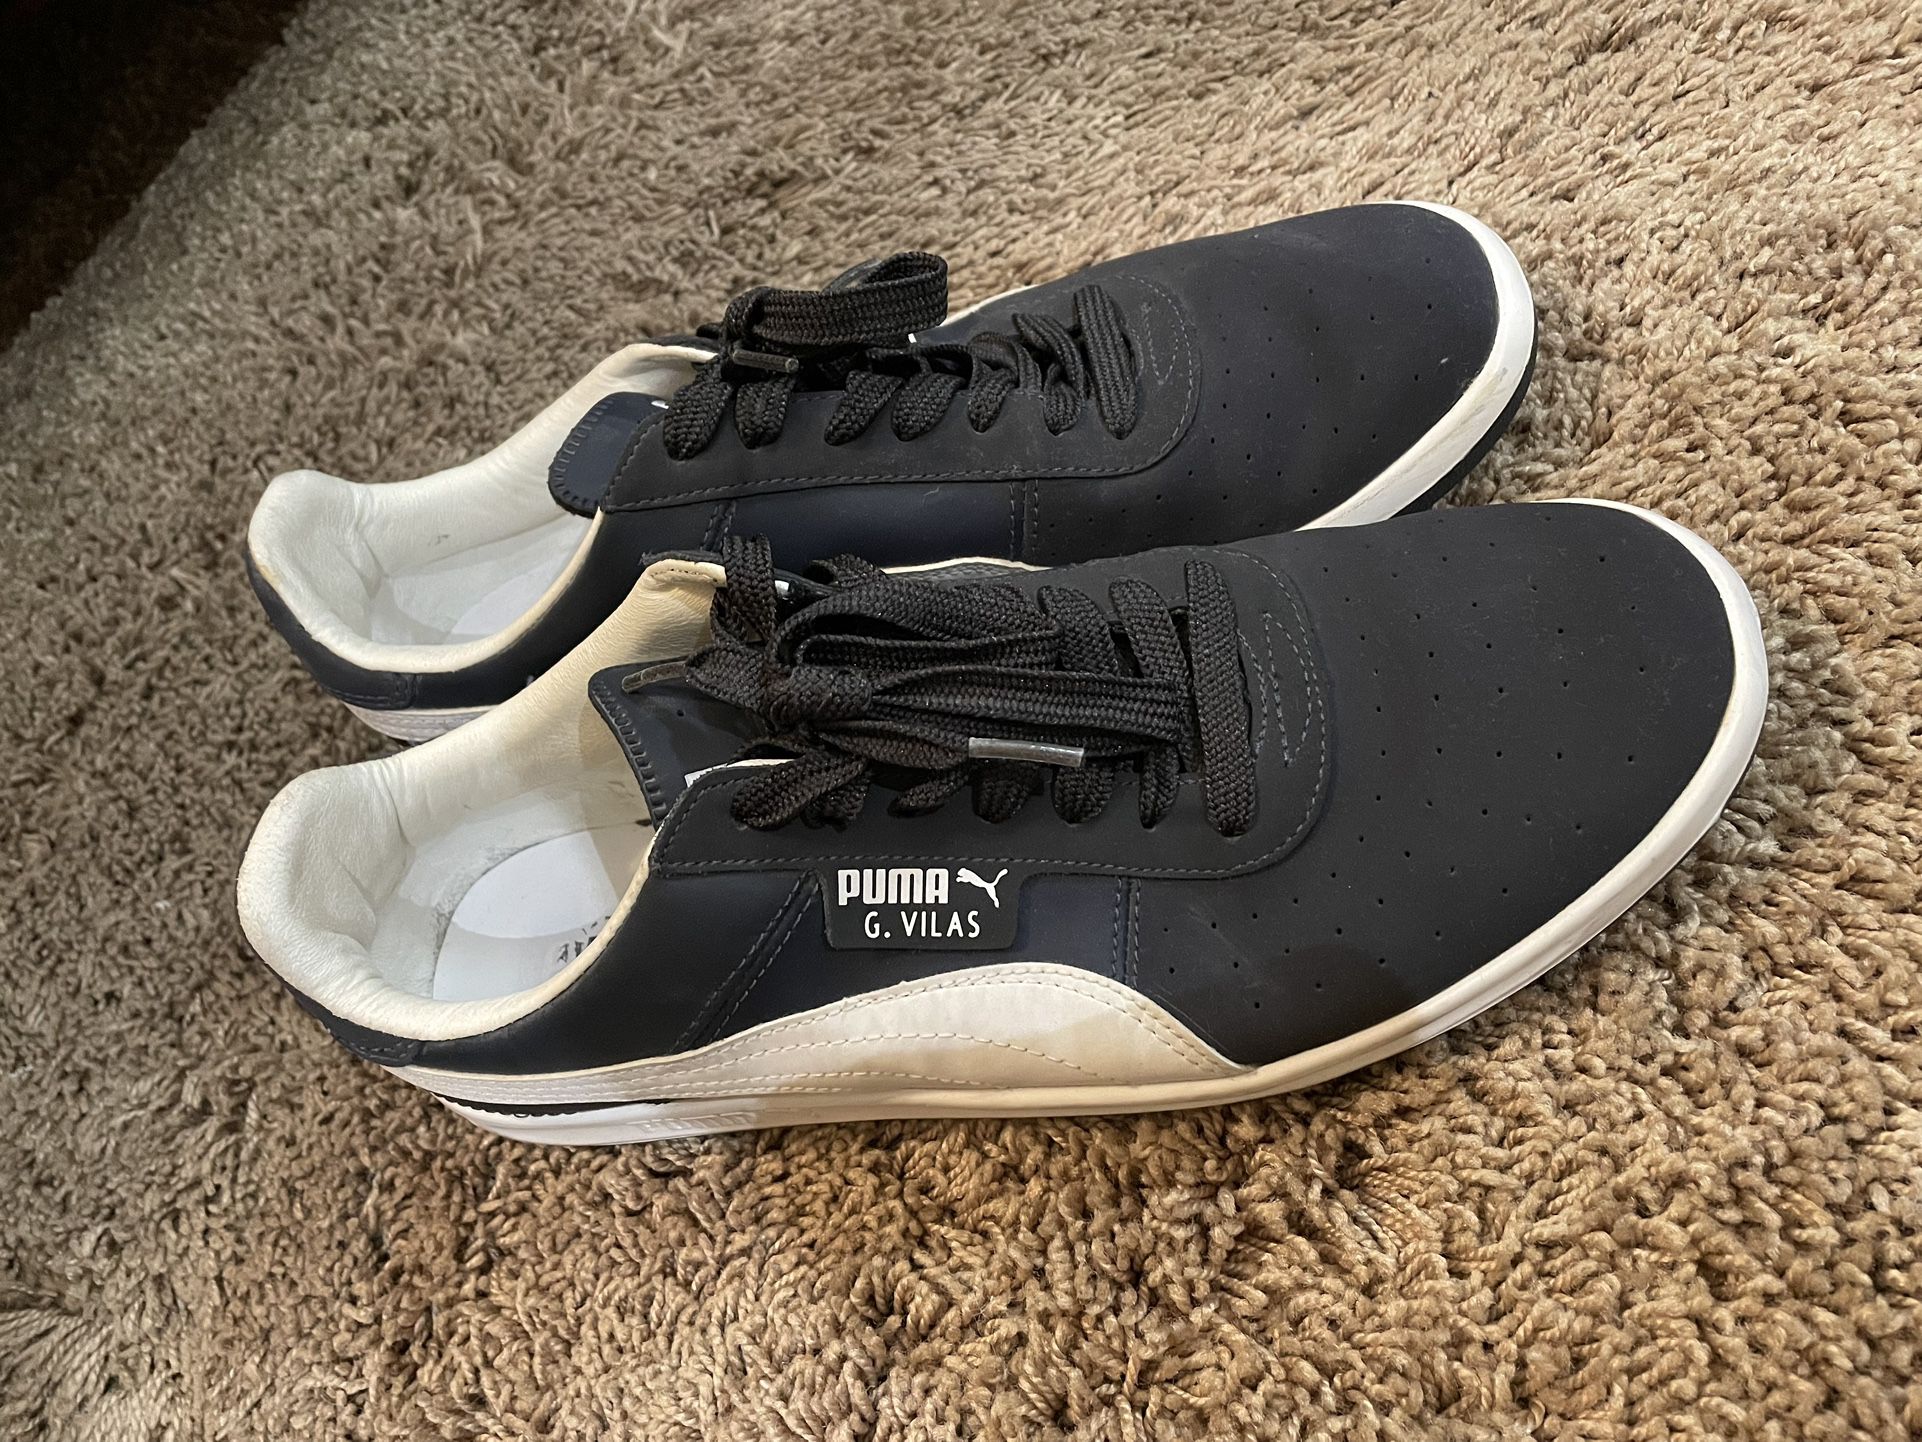 Men’s Puma’s Tennis Shoes 